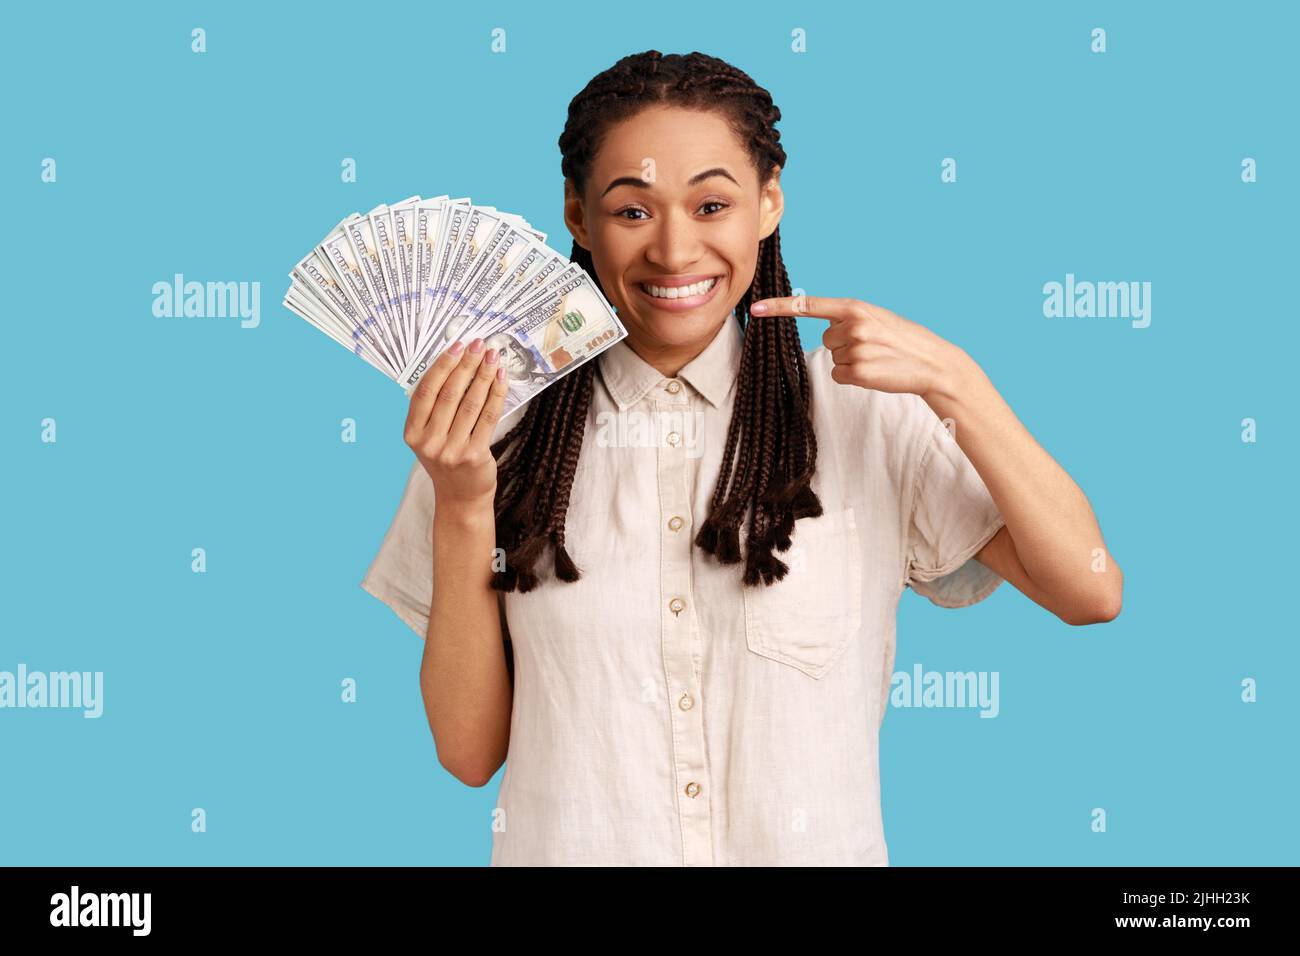 Femme souriante positive avec des dreadlocks noirs tenant des billets de banque en dollars, pointant de l'argent, regardant l'appareil photo avec une expression heureuse, portant une chemise blanche. Studio d'intérieur isolé sur fond bleu. Banque D'Images